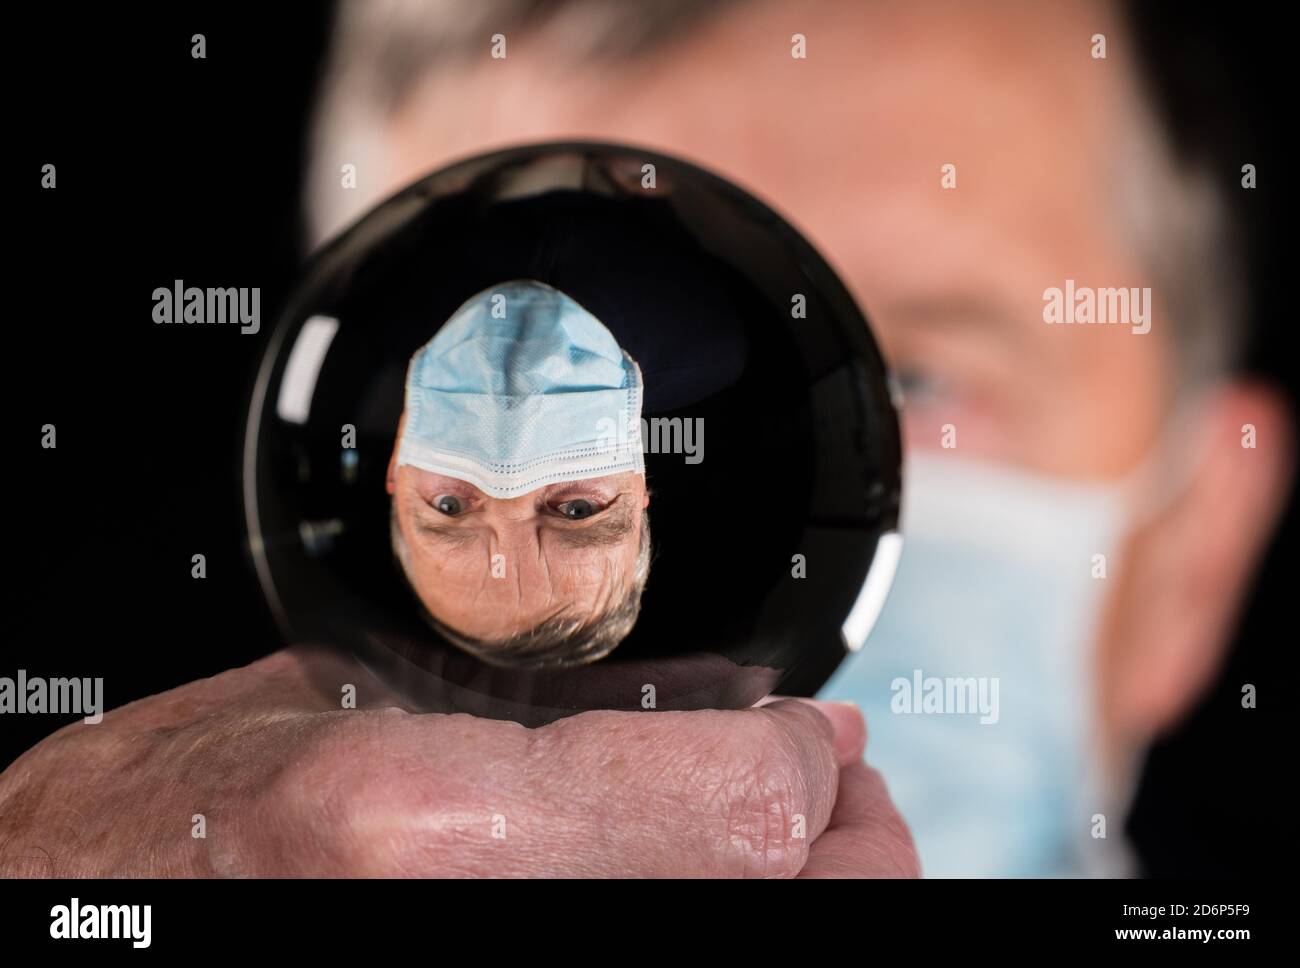 Uomo anziano indossando maschera contro il coronavirus e riflesso in fortuna dicendo palla di vetro. Concetto di persone che scelgono la responsabilità nelle elezioni Foto Stock